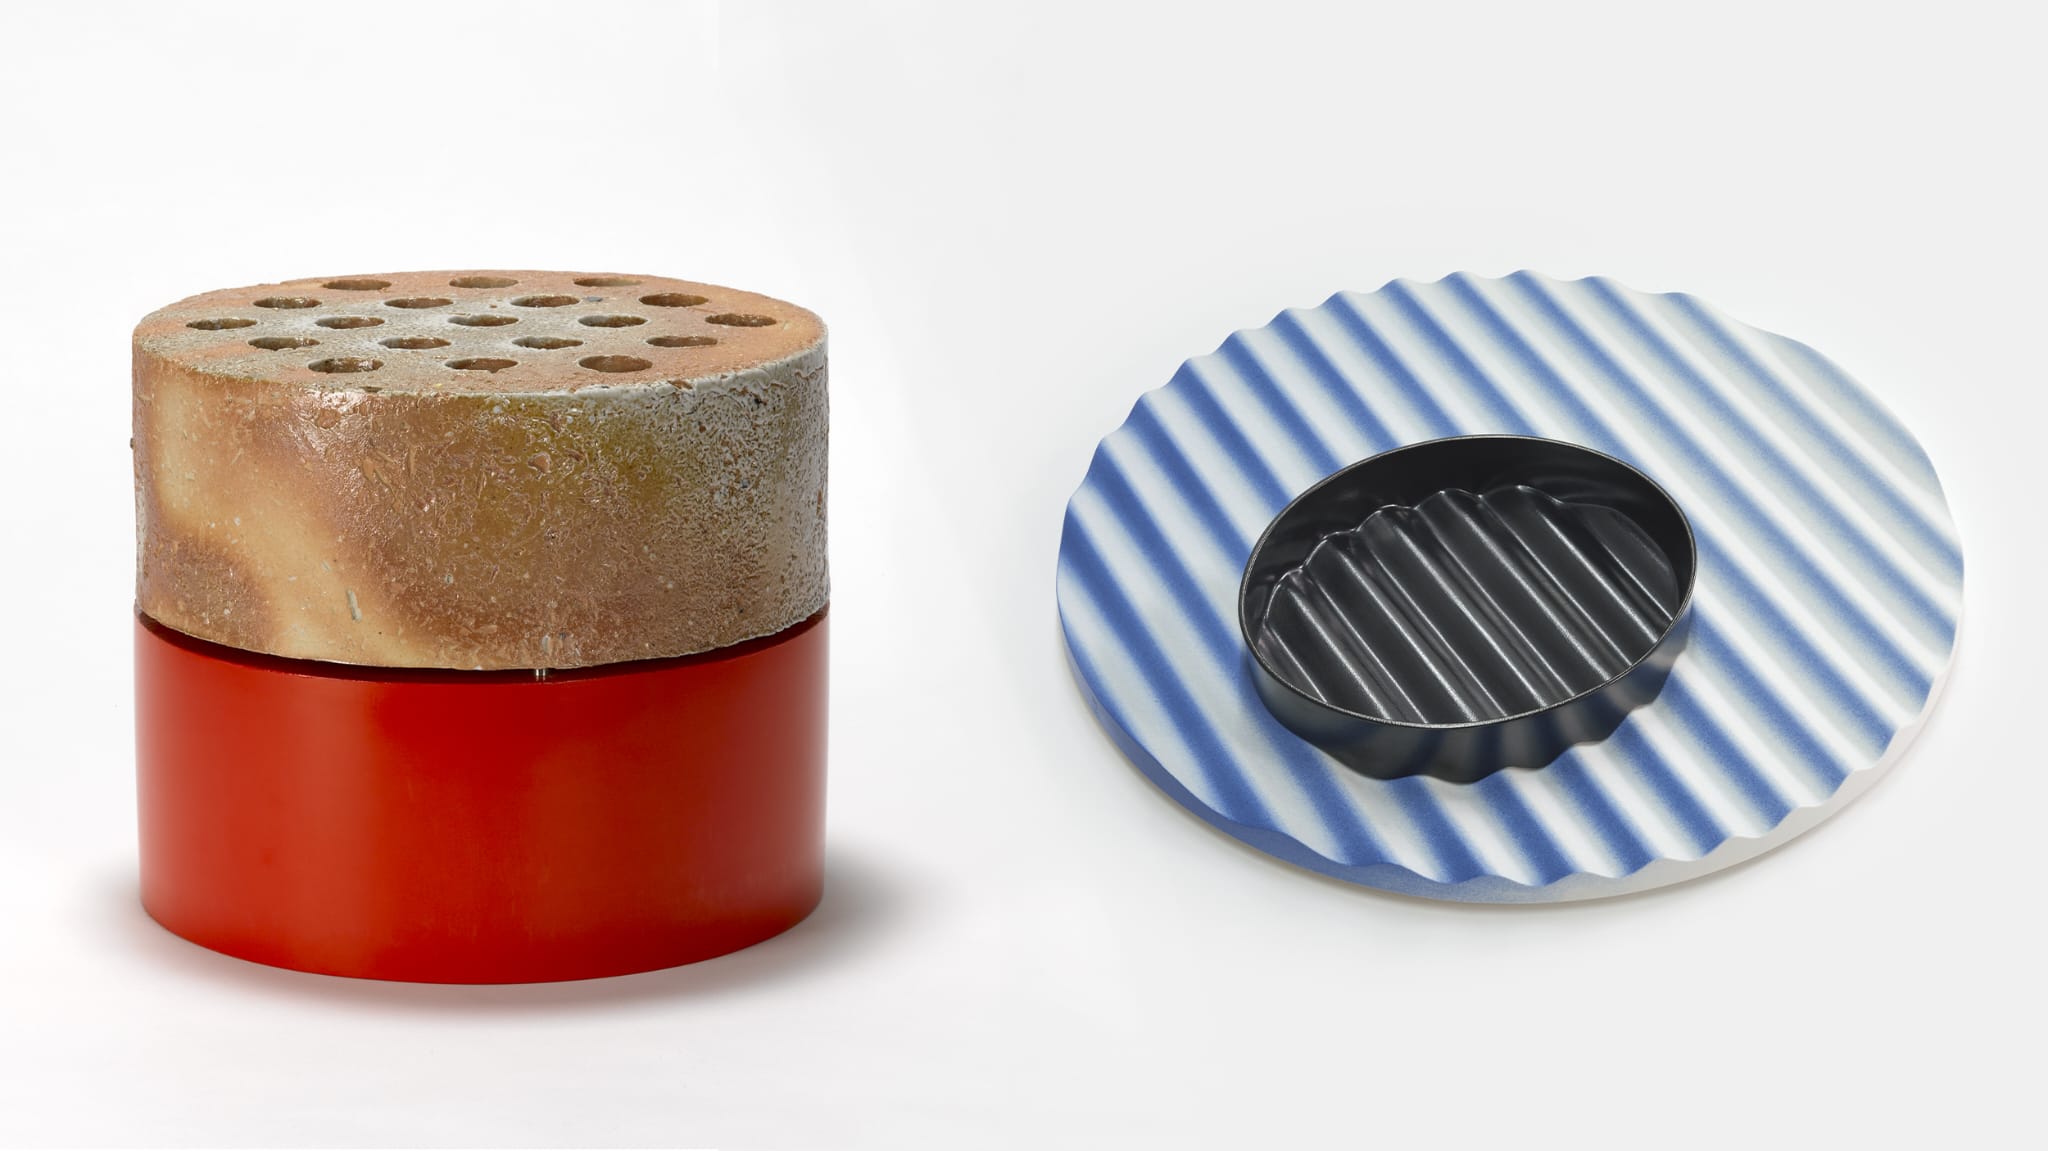 L'illustration montre deux objets. À gauche : un cylindre rouge et brun clair avec des trous sur le dessus. À droite : un cercle en porcelaine ondulée bleu ciel. Ce cercle surmonté d'un ovale en porcelaine noir, lui aussi.